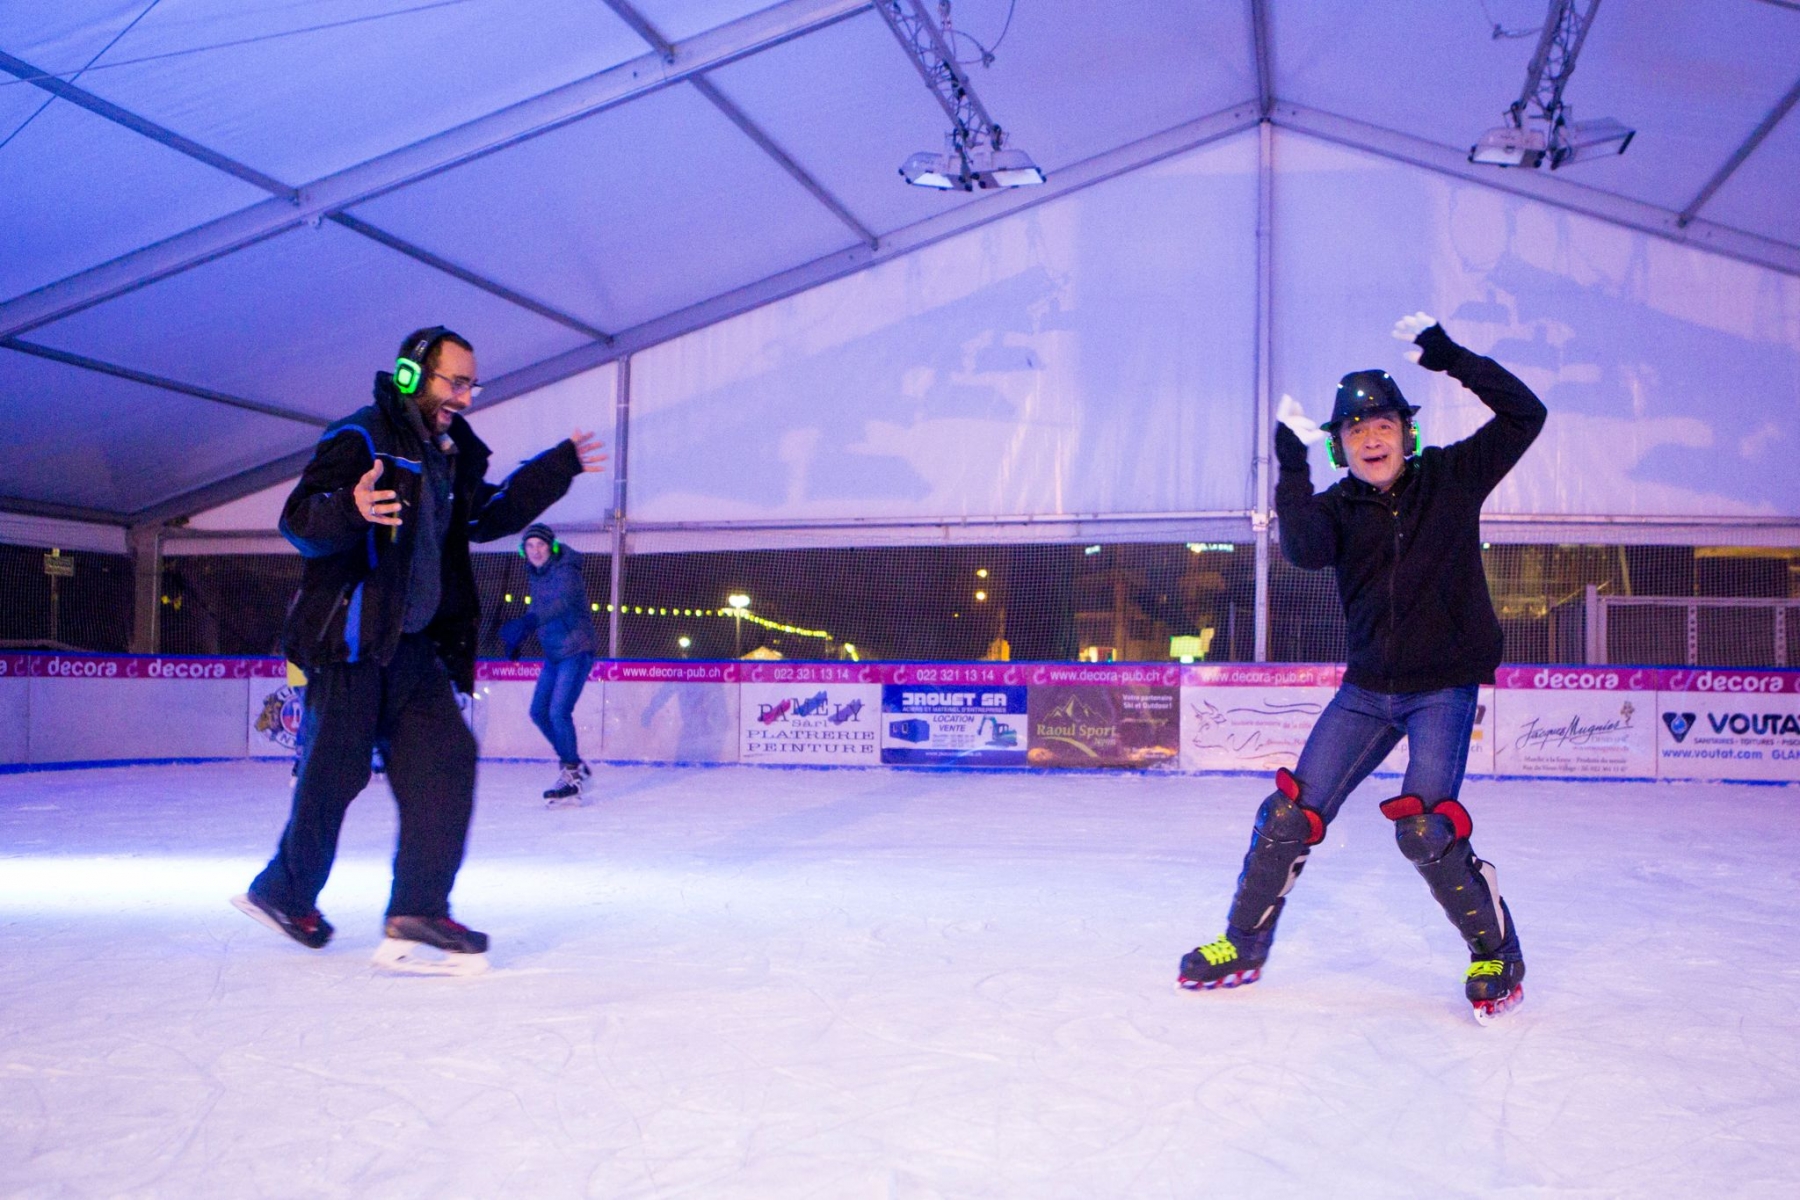 Le 17 décembre dernier, une "Silent Disco" avait été organisée pour la première fois sur la glace de la patinoire nyonnaise. Un des moments forts de la saison.